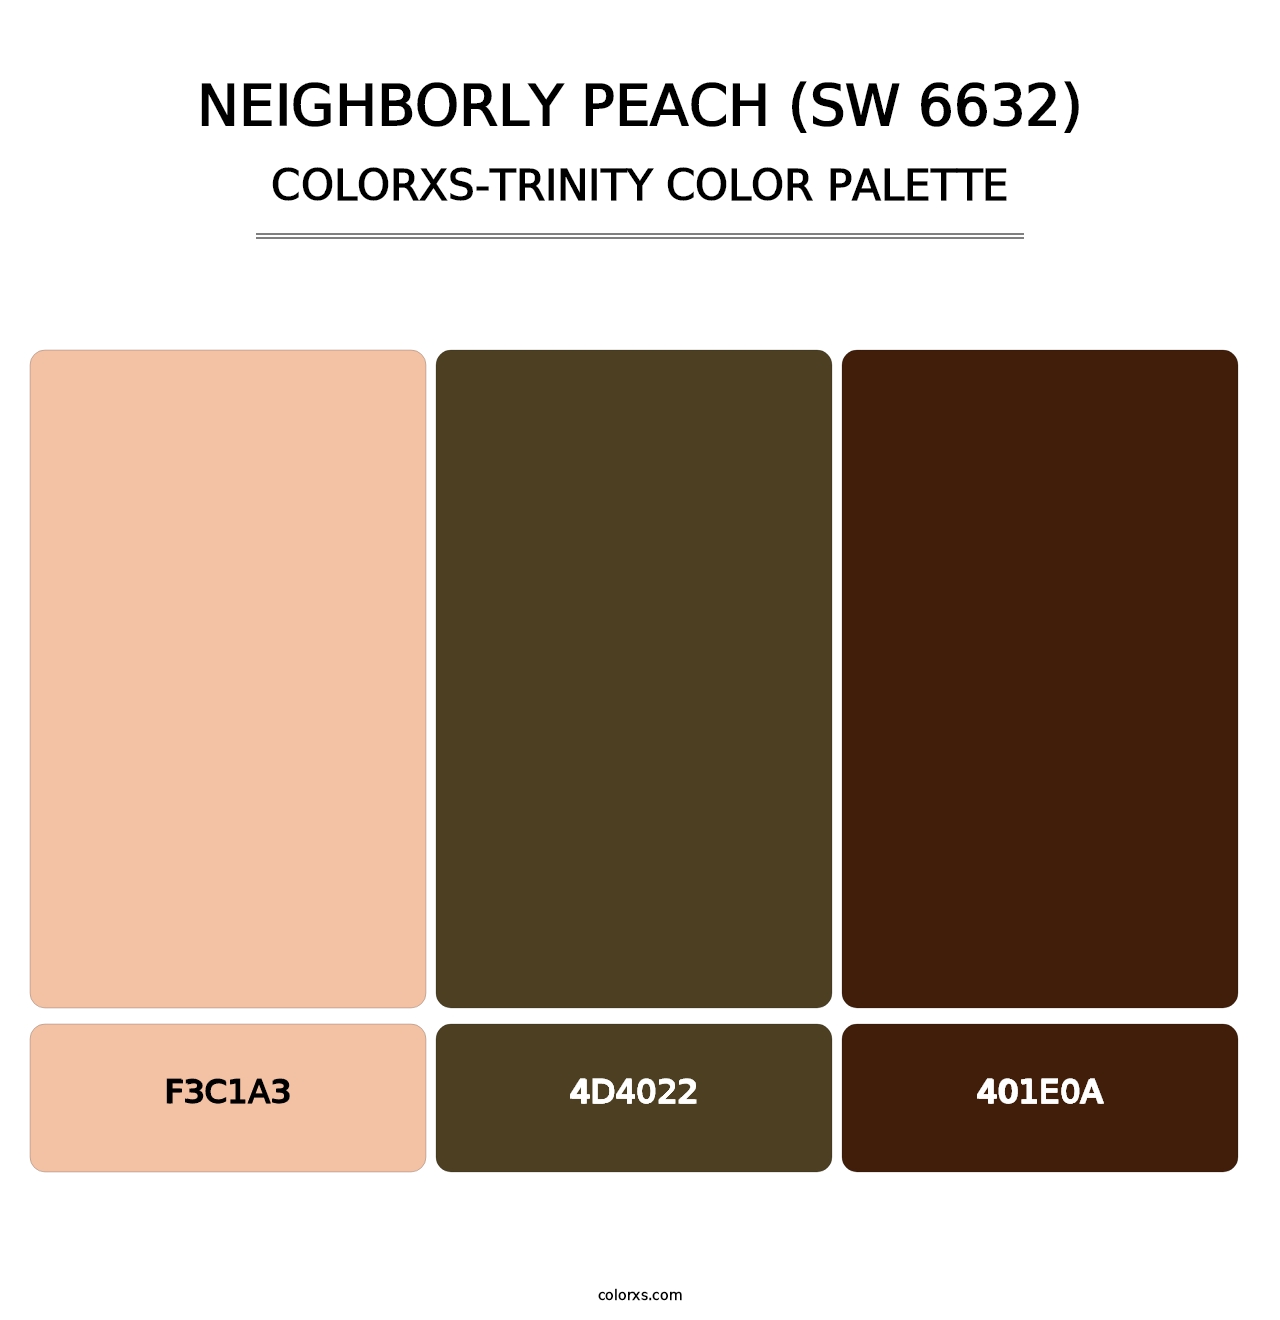 Neighborly Peach (SW 6632) - Colorxs Trinity Palette